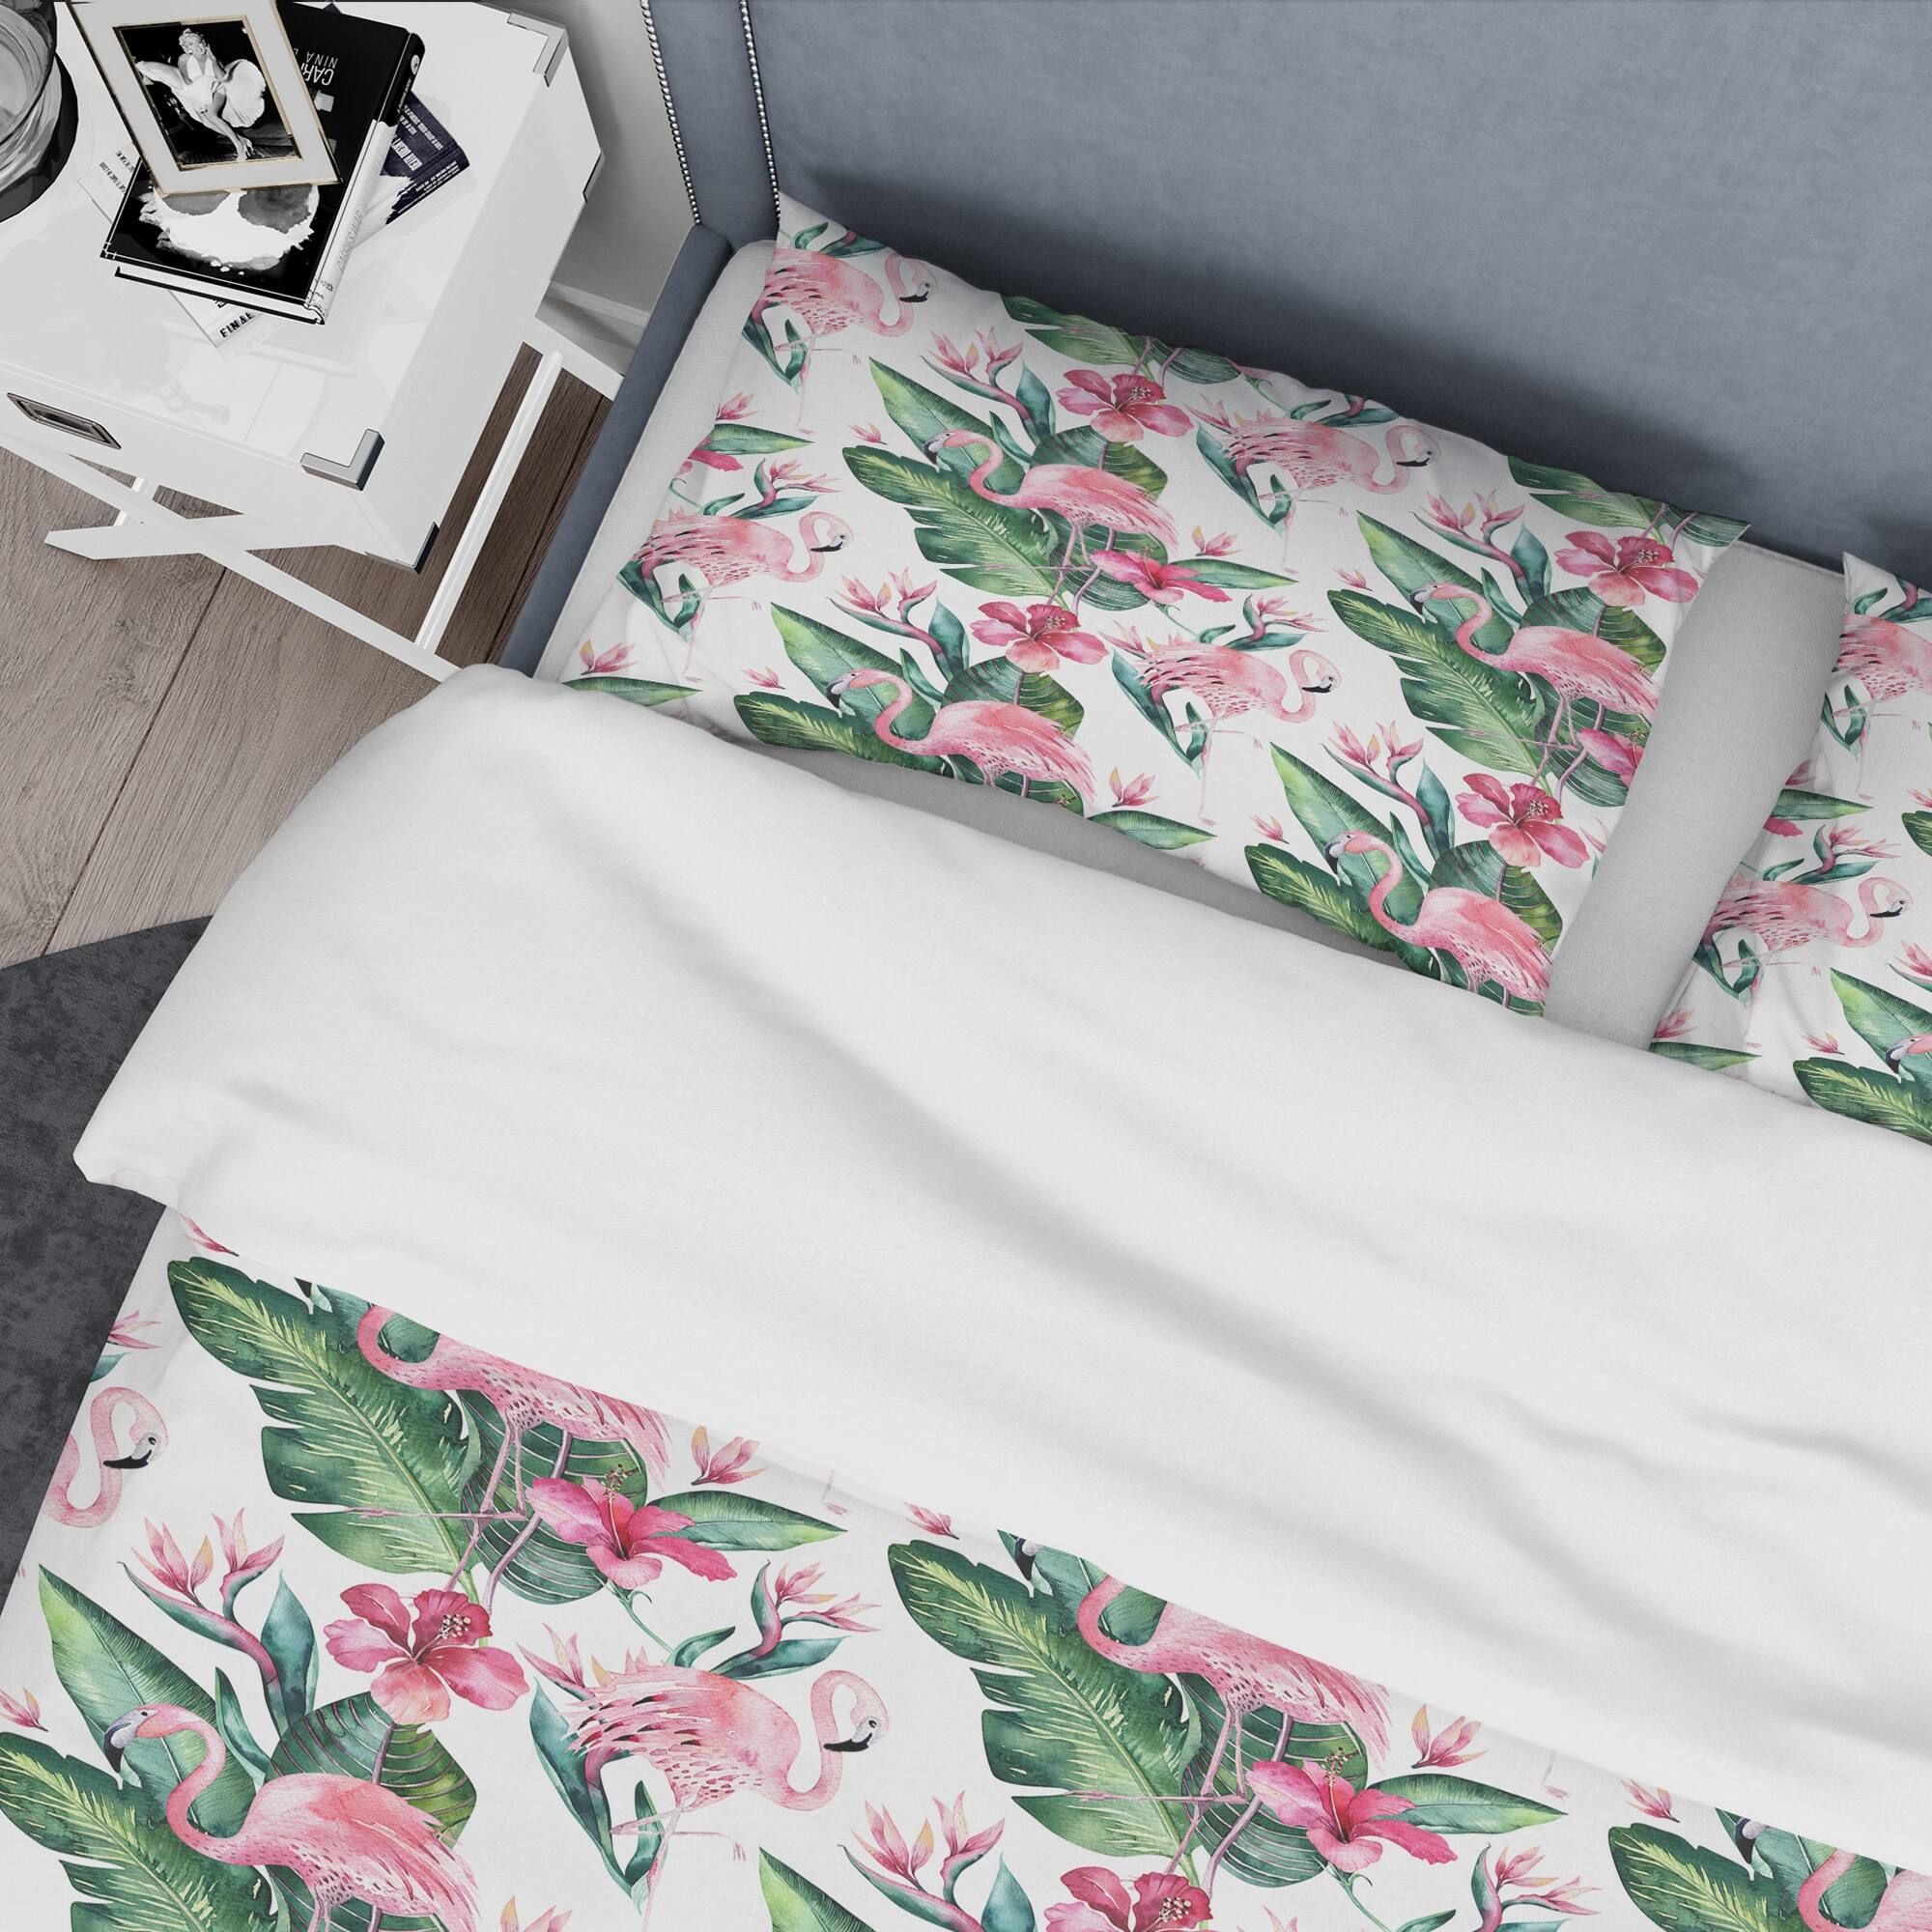 Designart 'Tropical Floral Summer ' Cabin & Lodge Duvet Cover Set - Bed ...